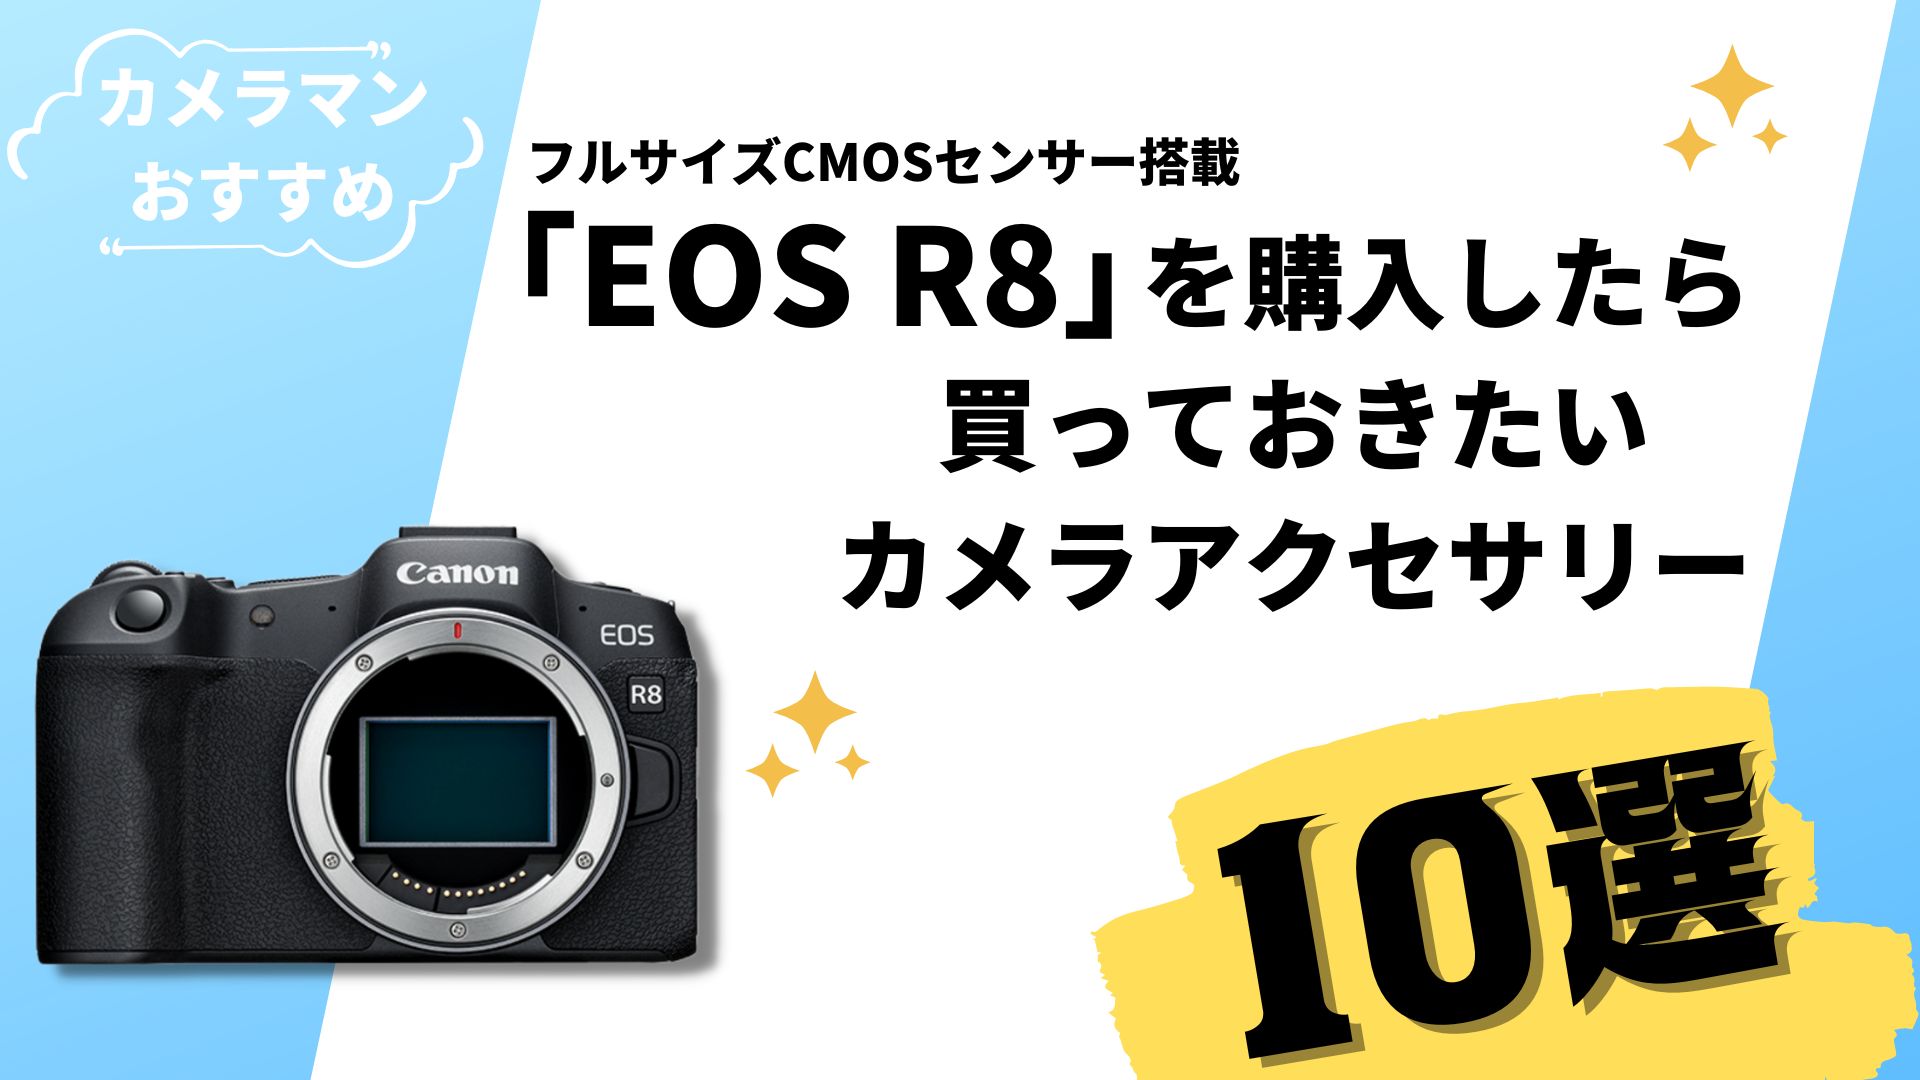 Canon「EOS R8」を購入したら買っておきたいカメラアクセサリー【10選】 | RE EARTH TV / リアスティーヴィー